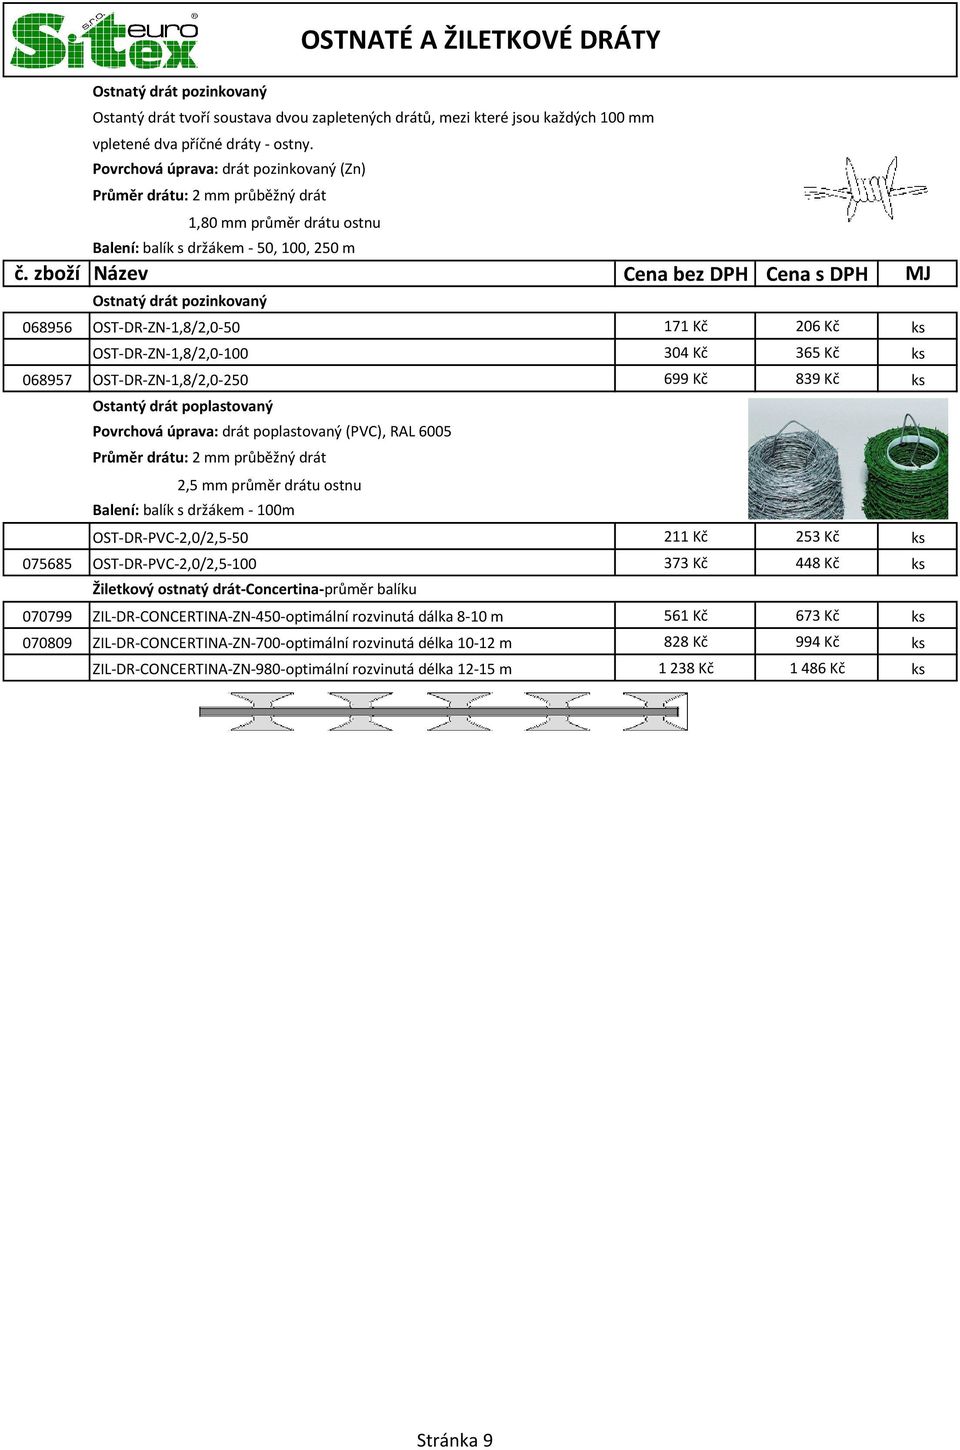 Kč 206 Kč ks OST-DR-ZN-1,8/2,0-100 304 Kč 365 Kč ks 068957 OST-DR-ZN-1,8/2,0-250 699 Kč 839 Kč ks Ostantý drát poplastovaný Povrchová úprava: drát poplastovaný (PVC), RAL 6005 Průměr drátu: 2 mm